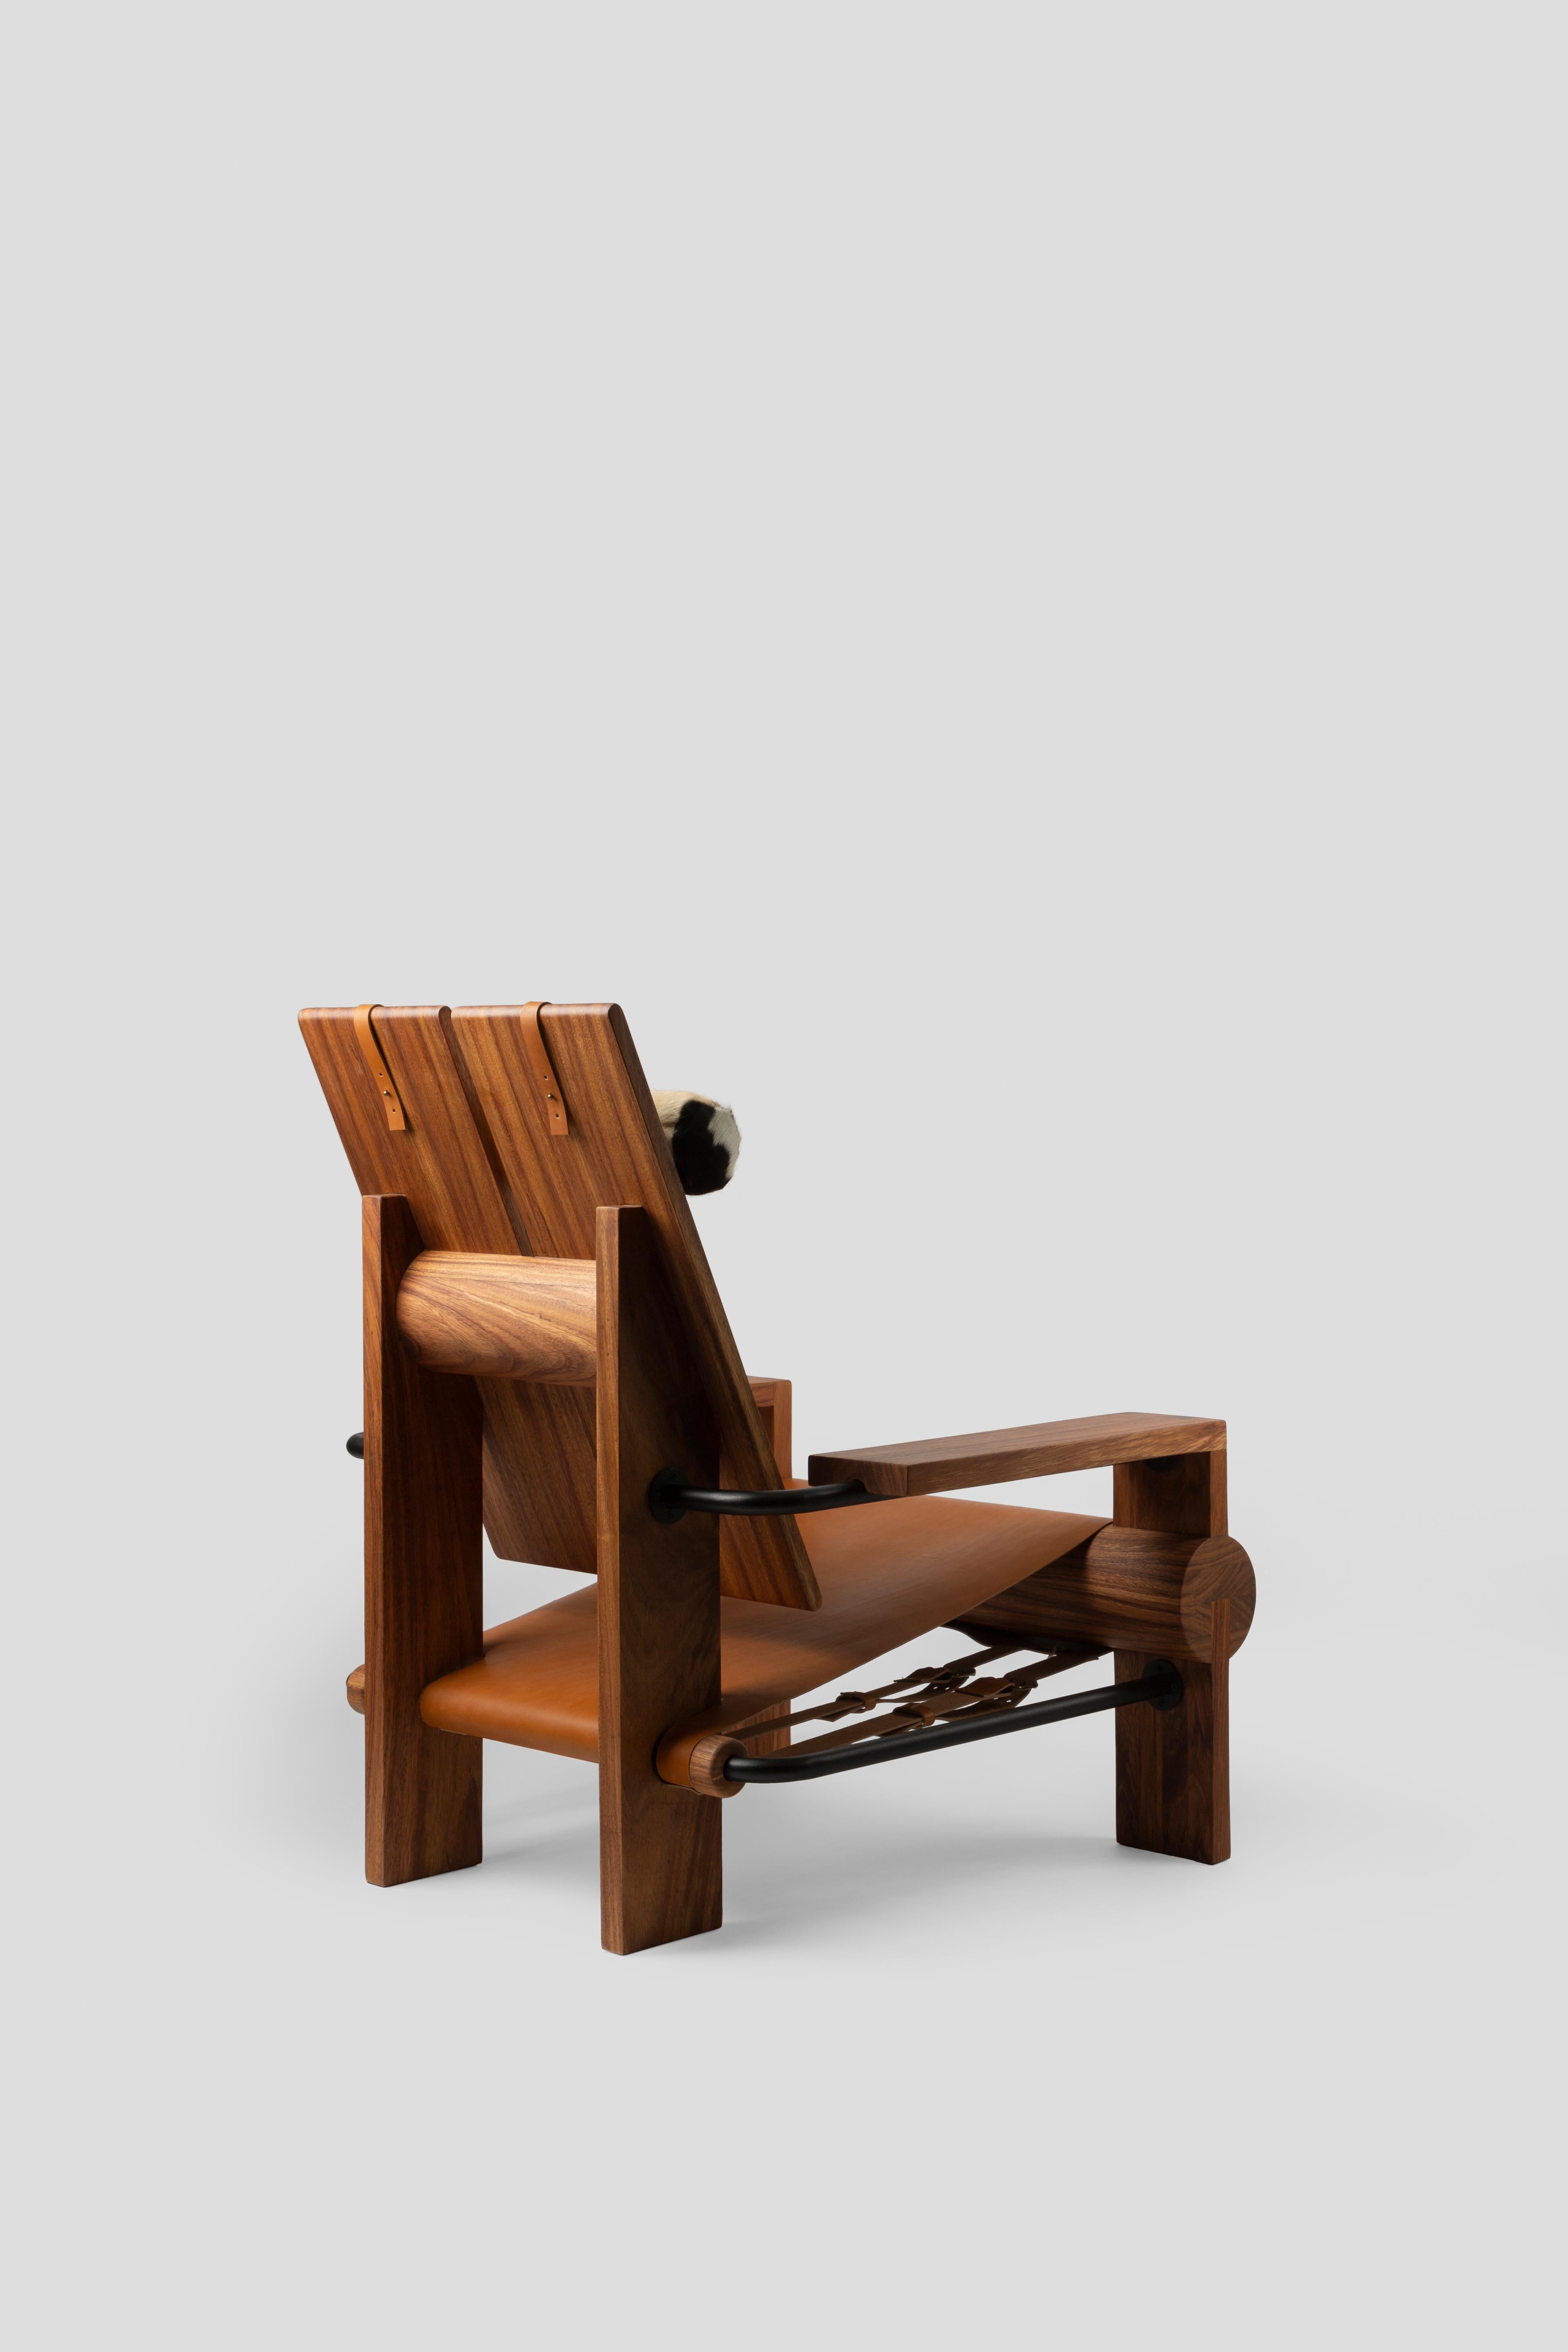 Metal San Francisco Chair by Comité De Proyectos For Sale